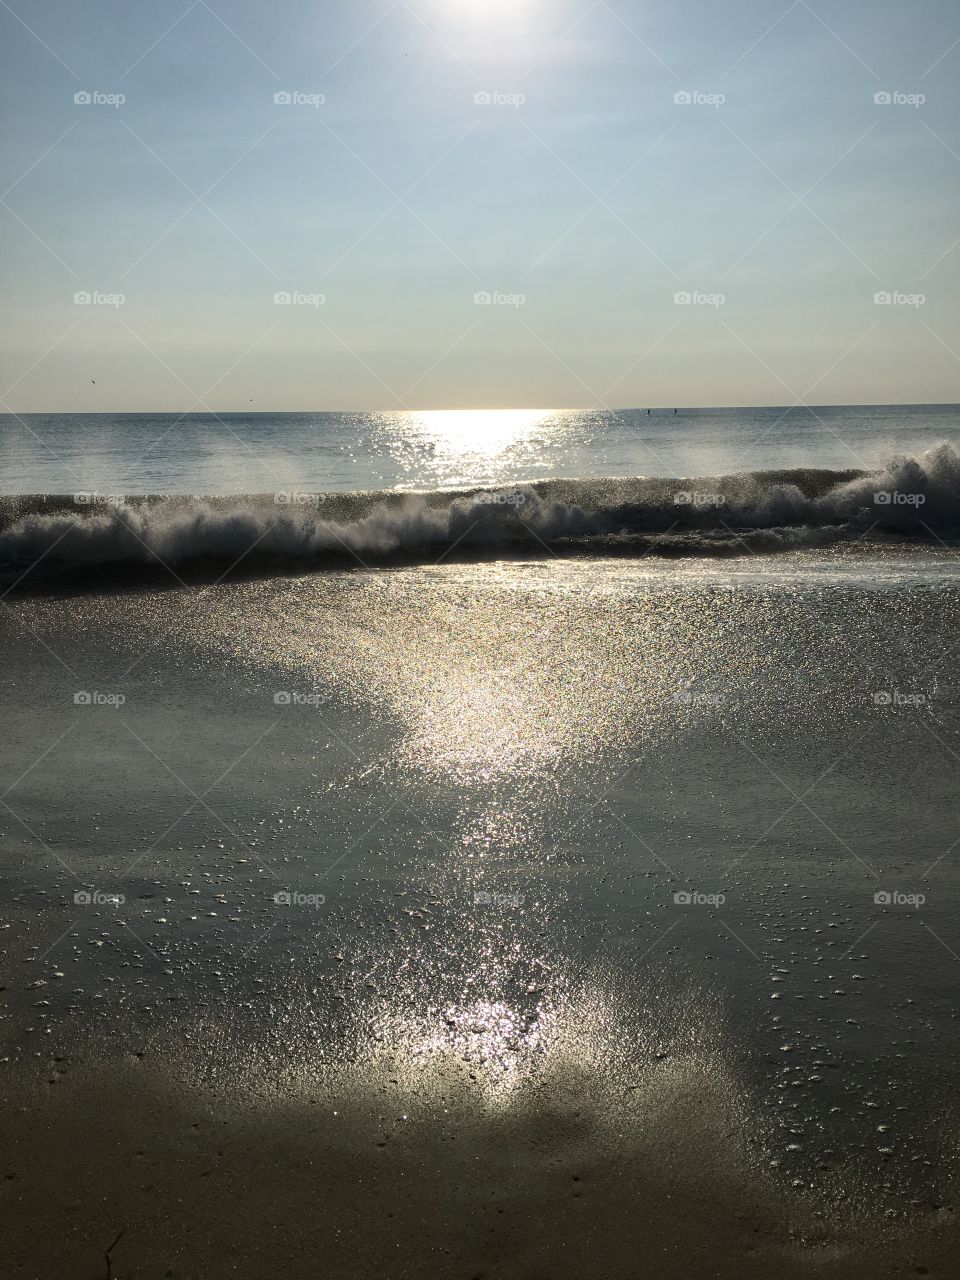 Sea spray and sun.